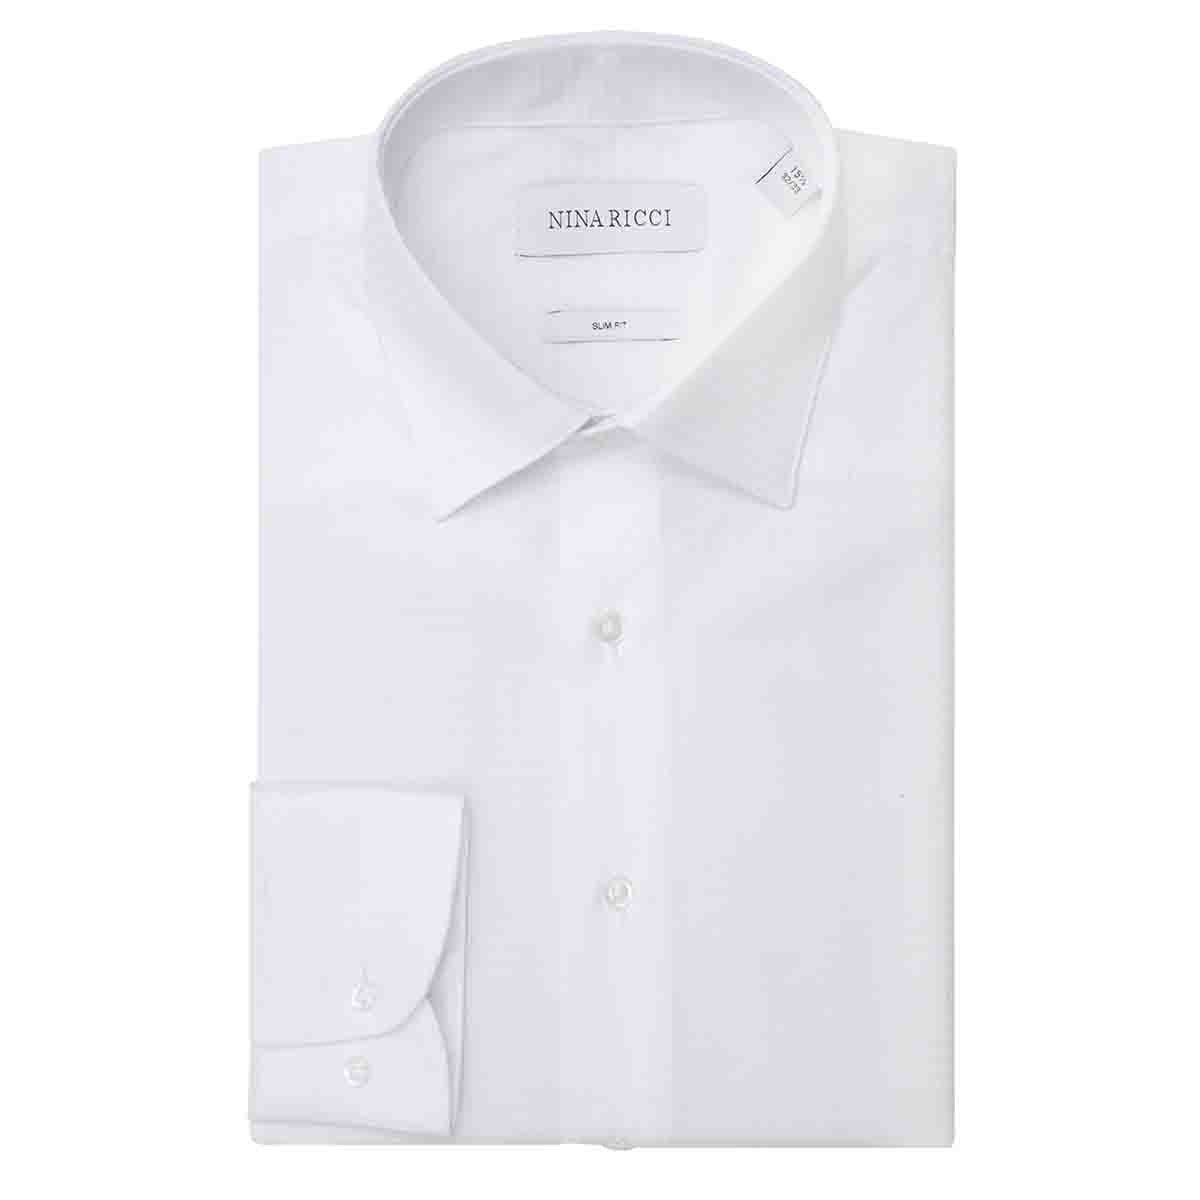 Camisa de Vestir Color Blanco Nina Ricci para Caballero